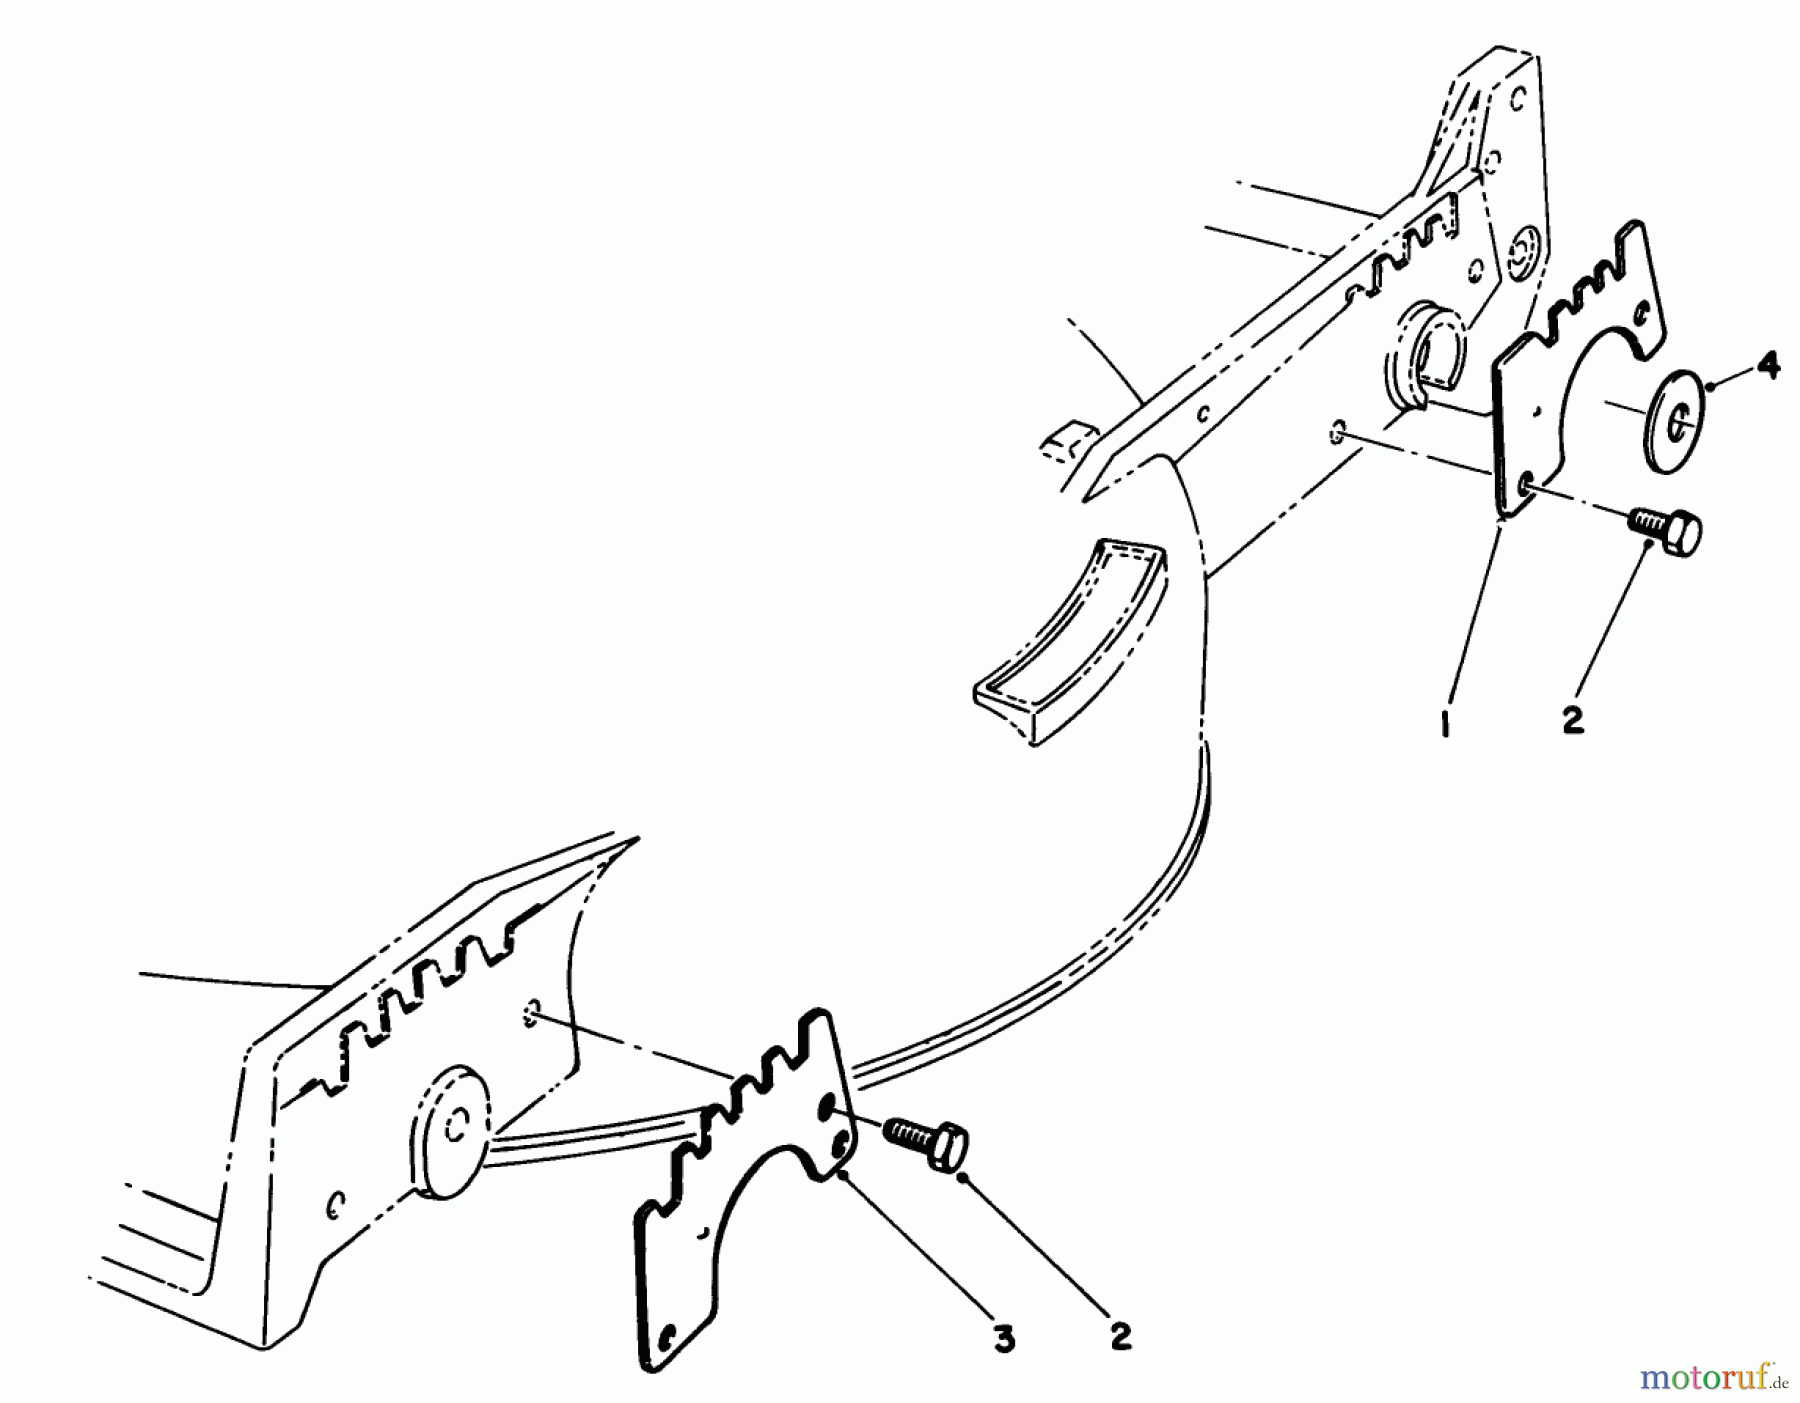  Toro Neu Mowers, Walk-Behind Seite 1 20588 - Toro Lawnmower, 1985 (5000001-5999999) WEAR PLATE KIT NO. 49-4080 (OPTIONAL)